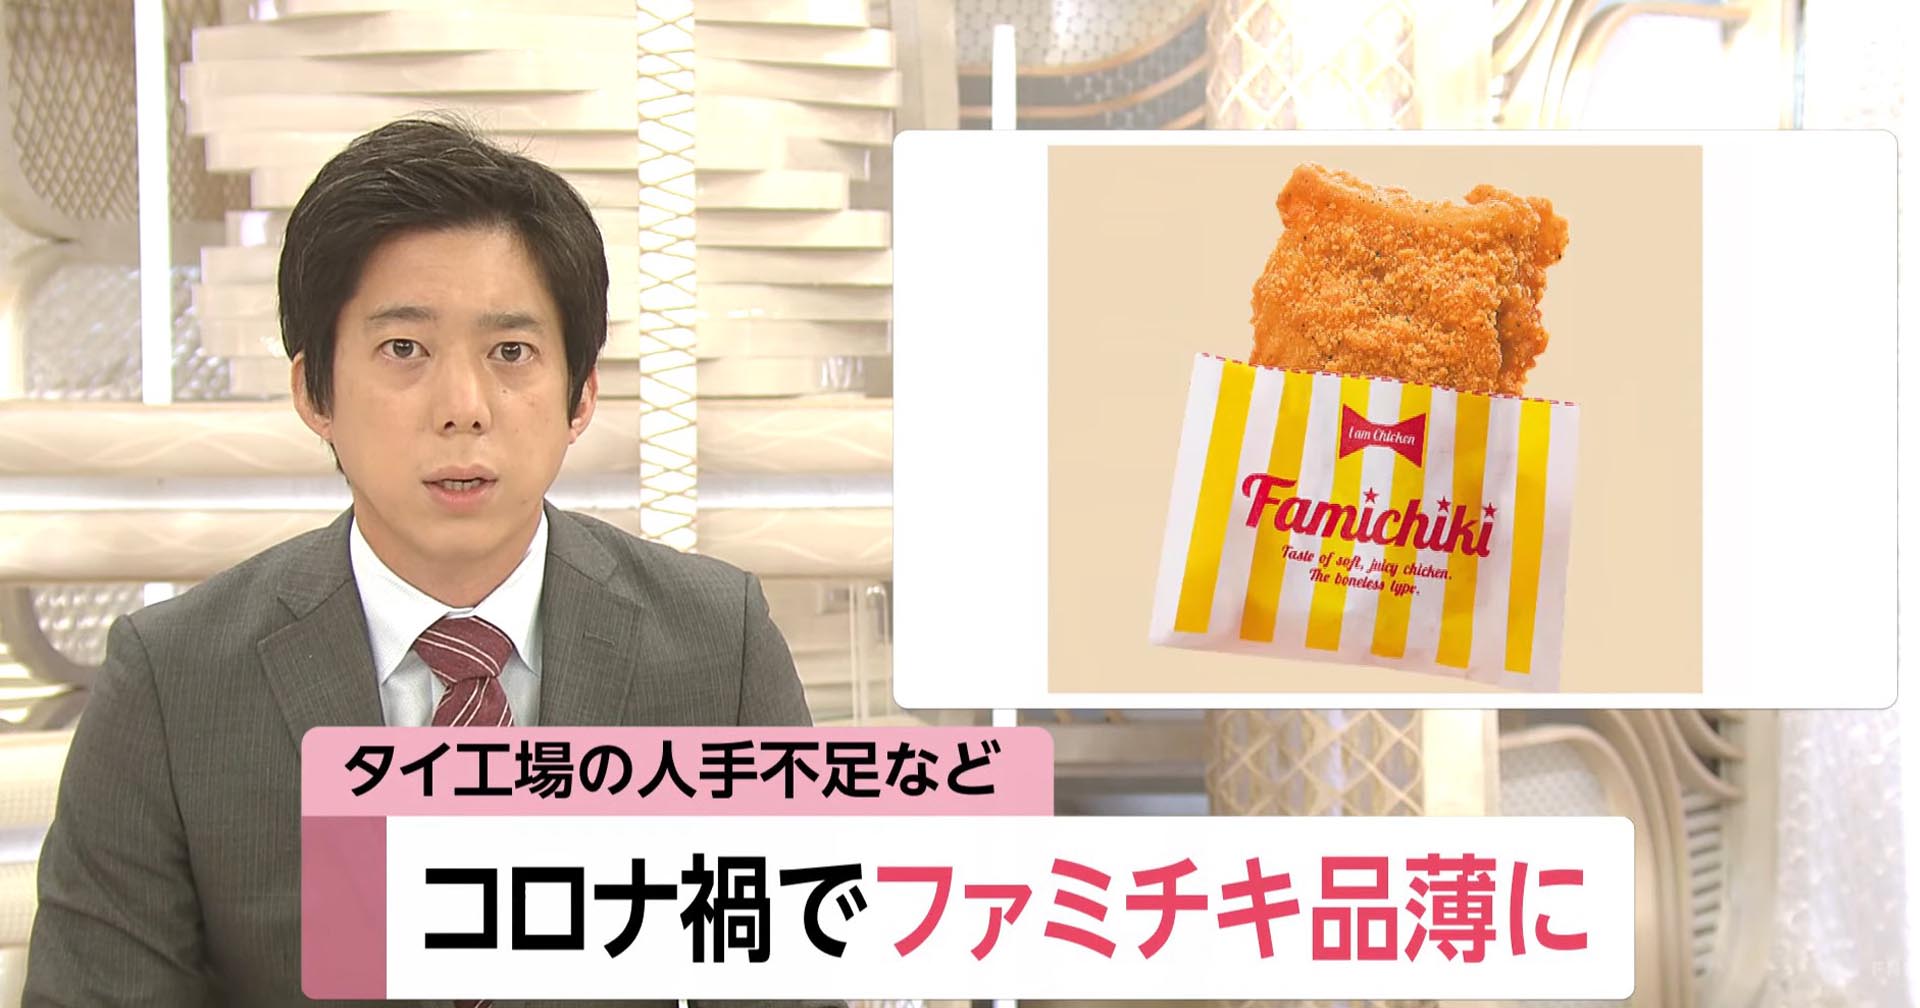 ร้านสะดวกซื้อในญี่ปุ่นประสบปัญหาขาดแคลนไก่ทอด เพราะโควิดในไทย